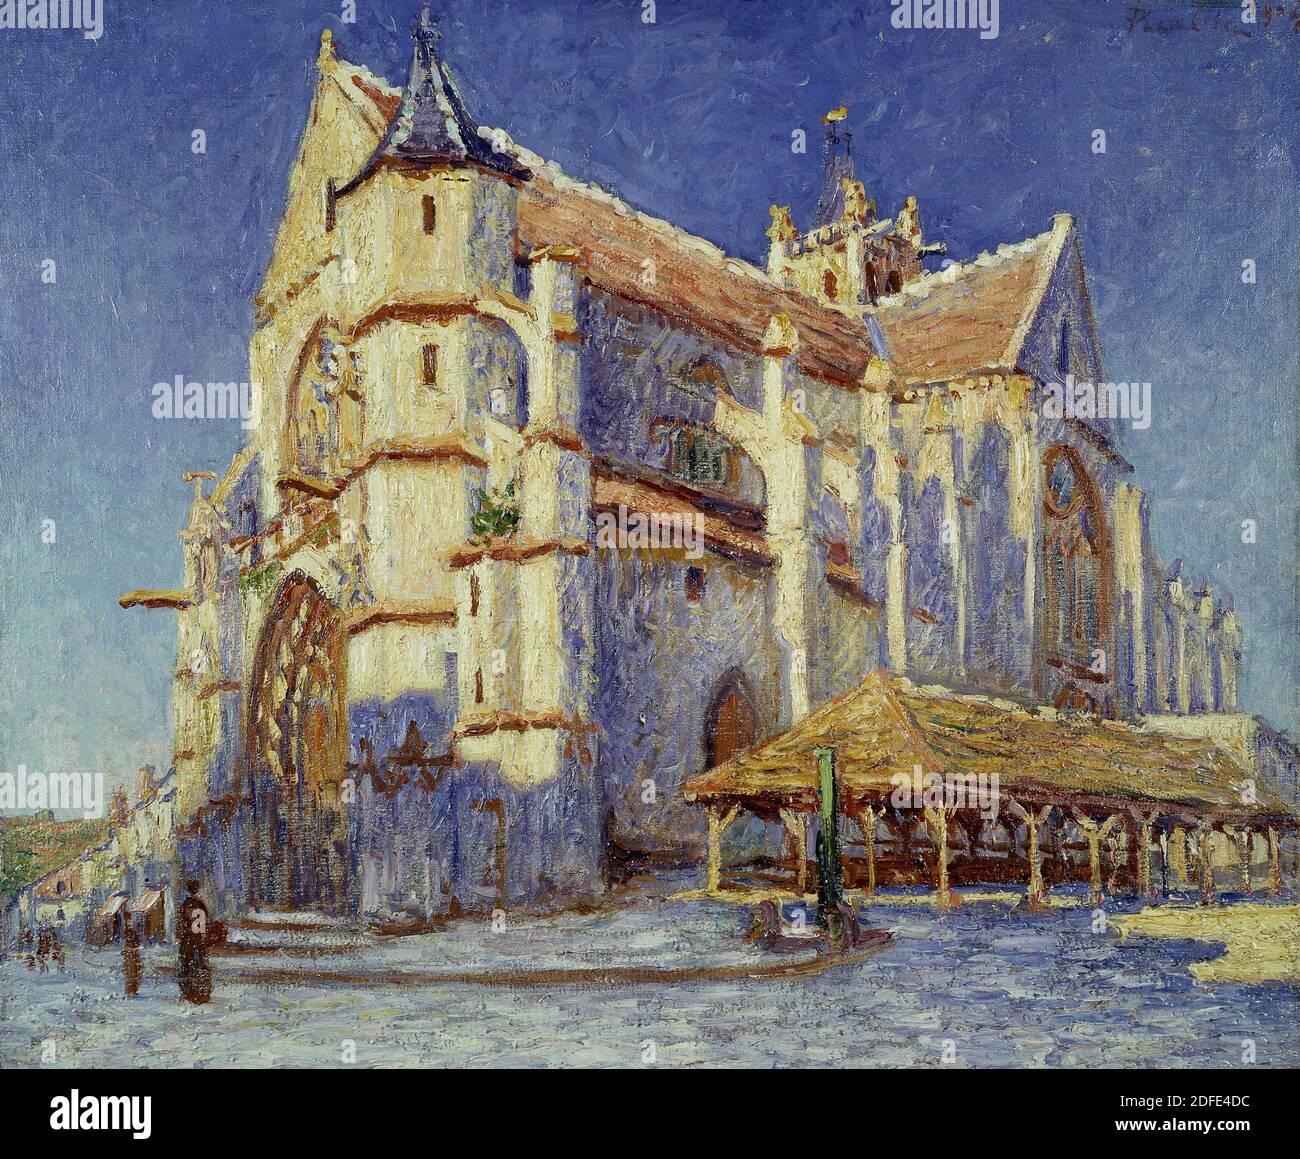 Die Kirche von Moret - 1904 - Öl auf Leinwand. Autor: FRANCIS PICABIA. Ort: PRIVATE SAMMLUNG. Frankreich. Stockfoto